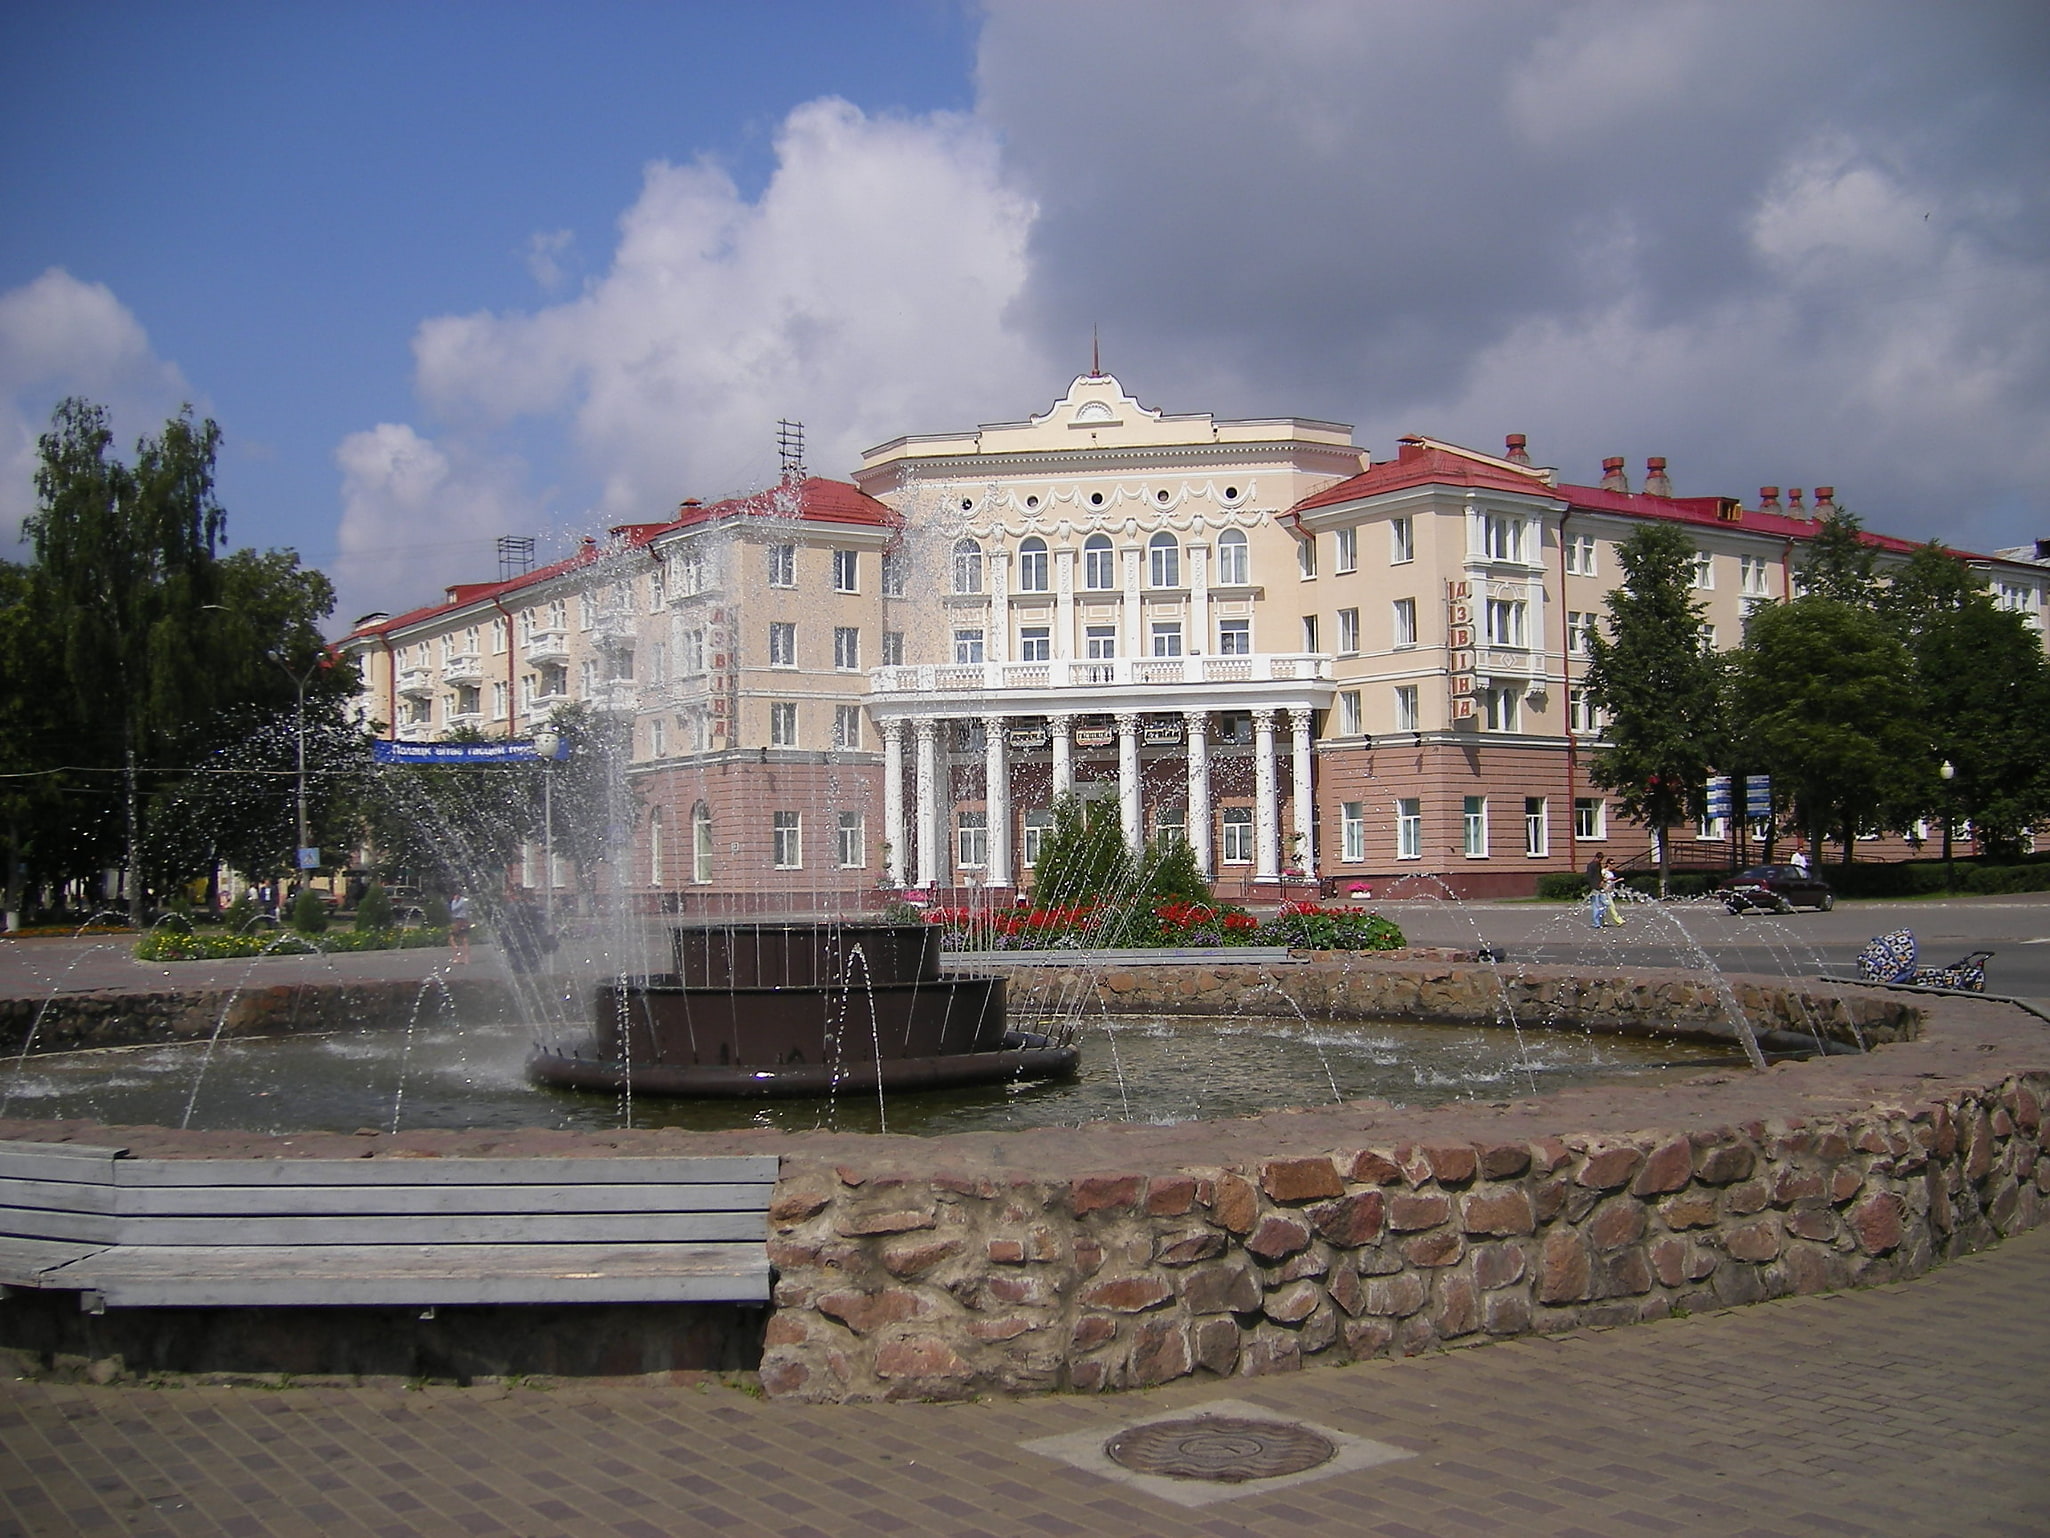 Pólatsk, Bielorrusia